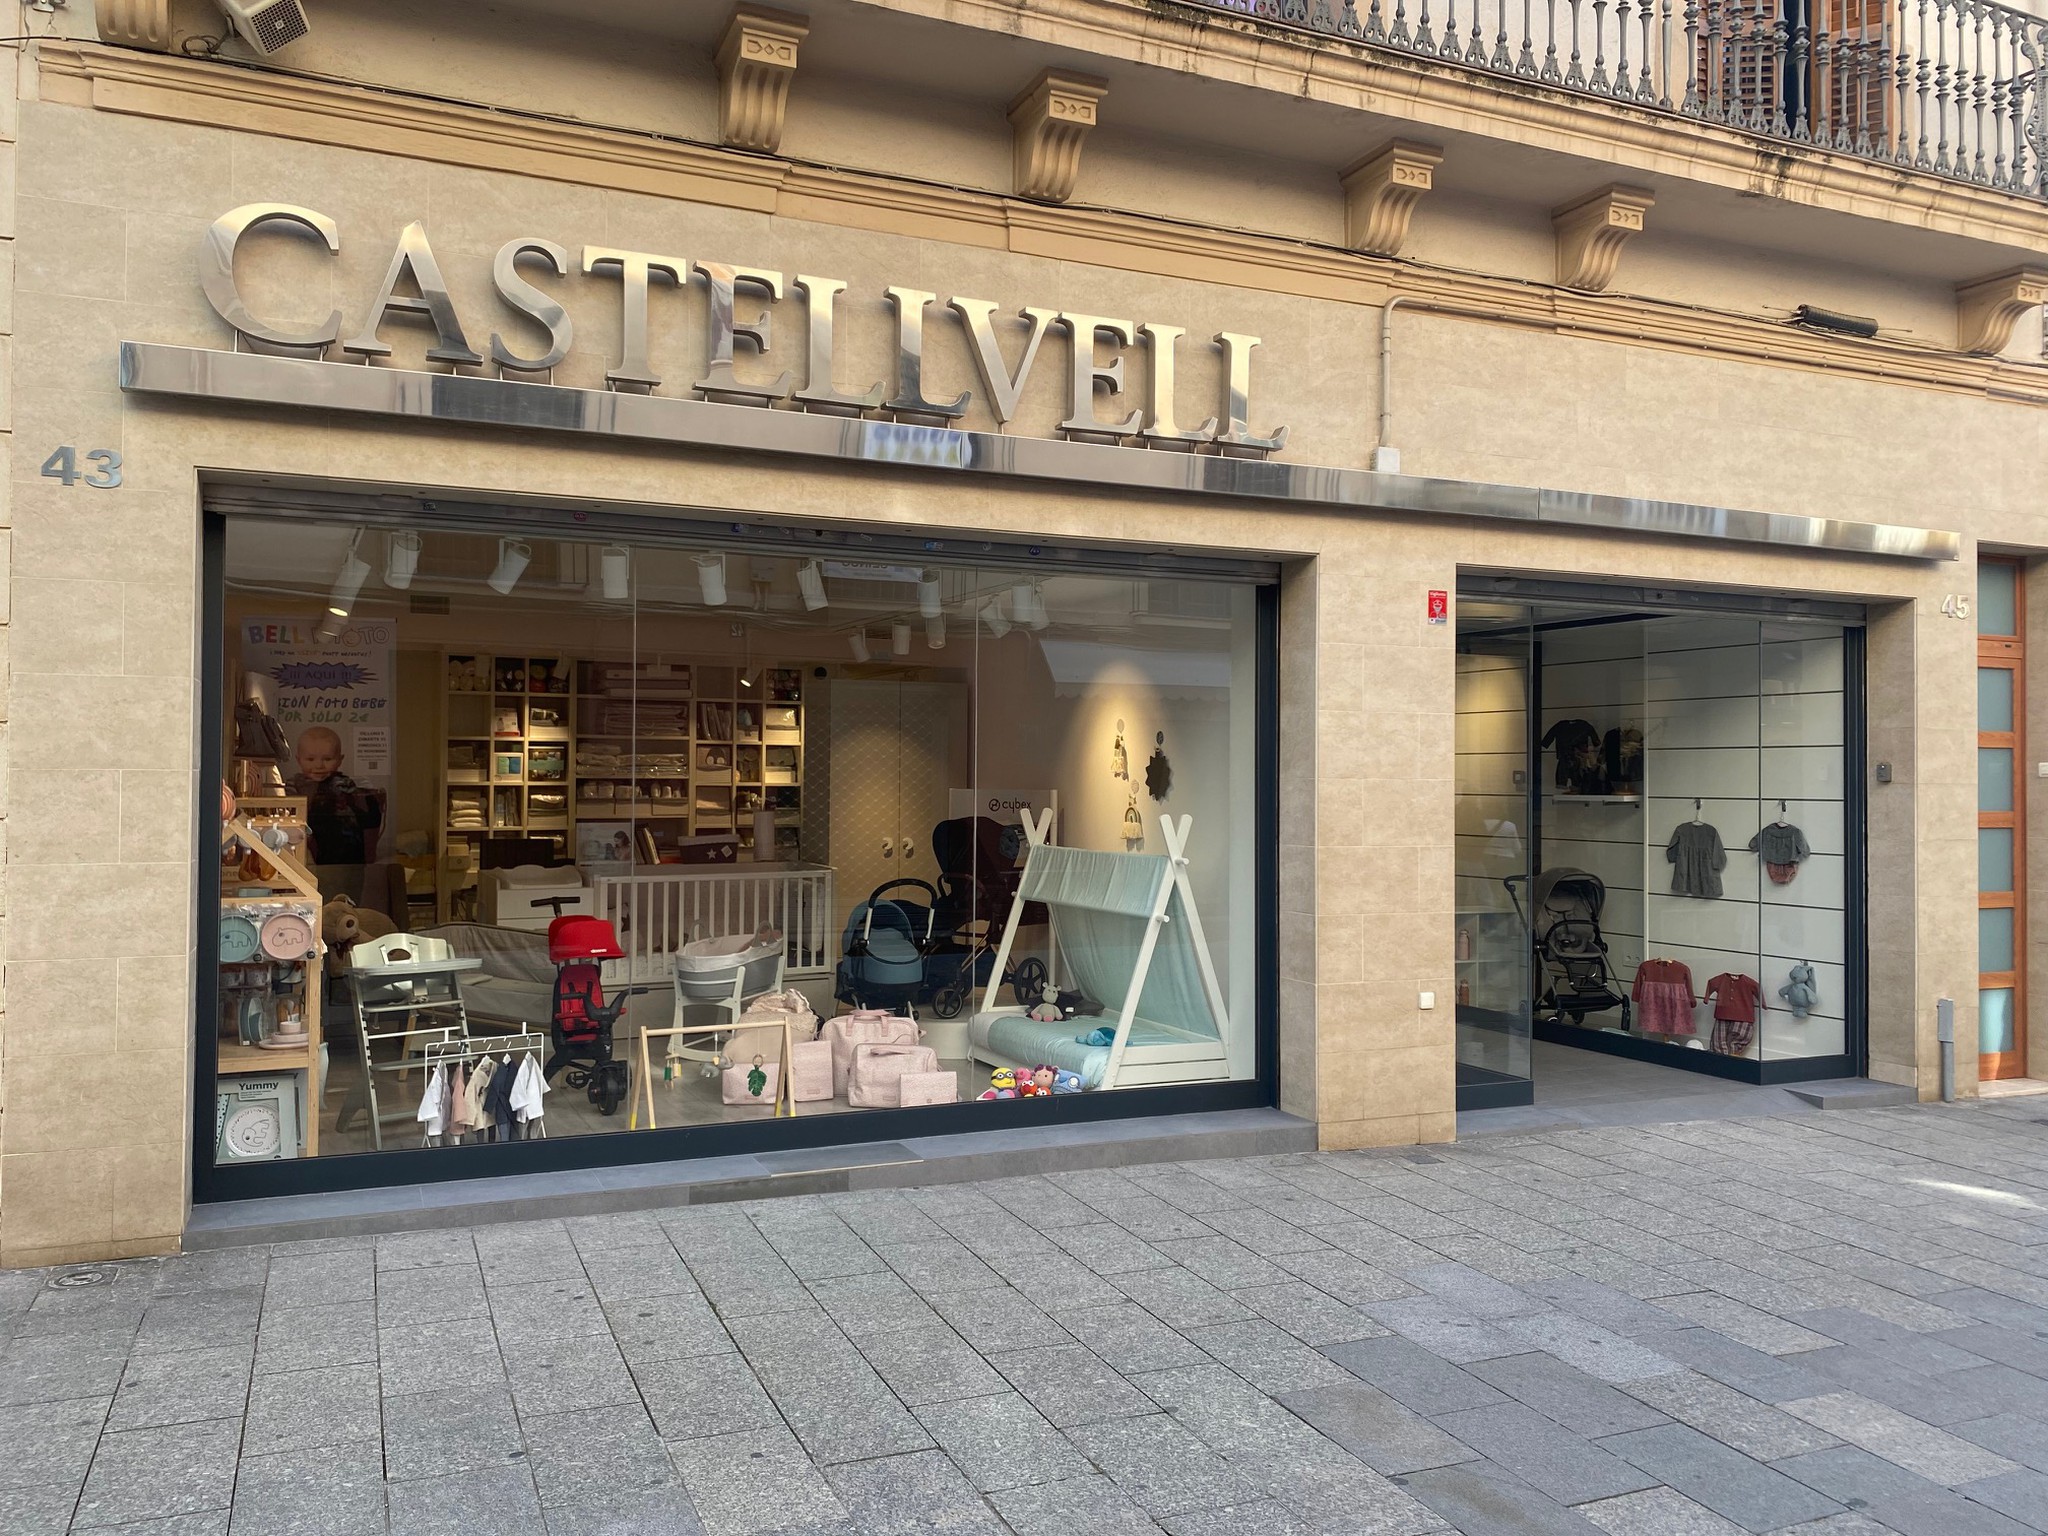 tienda online de productos de bebe Castellvell